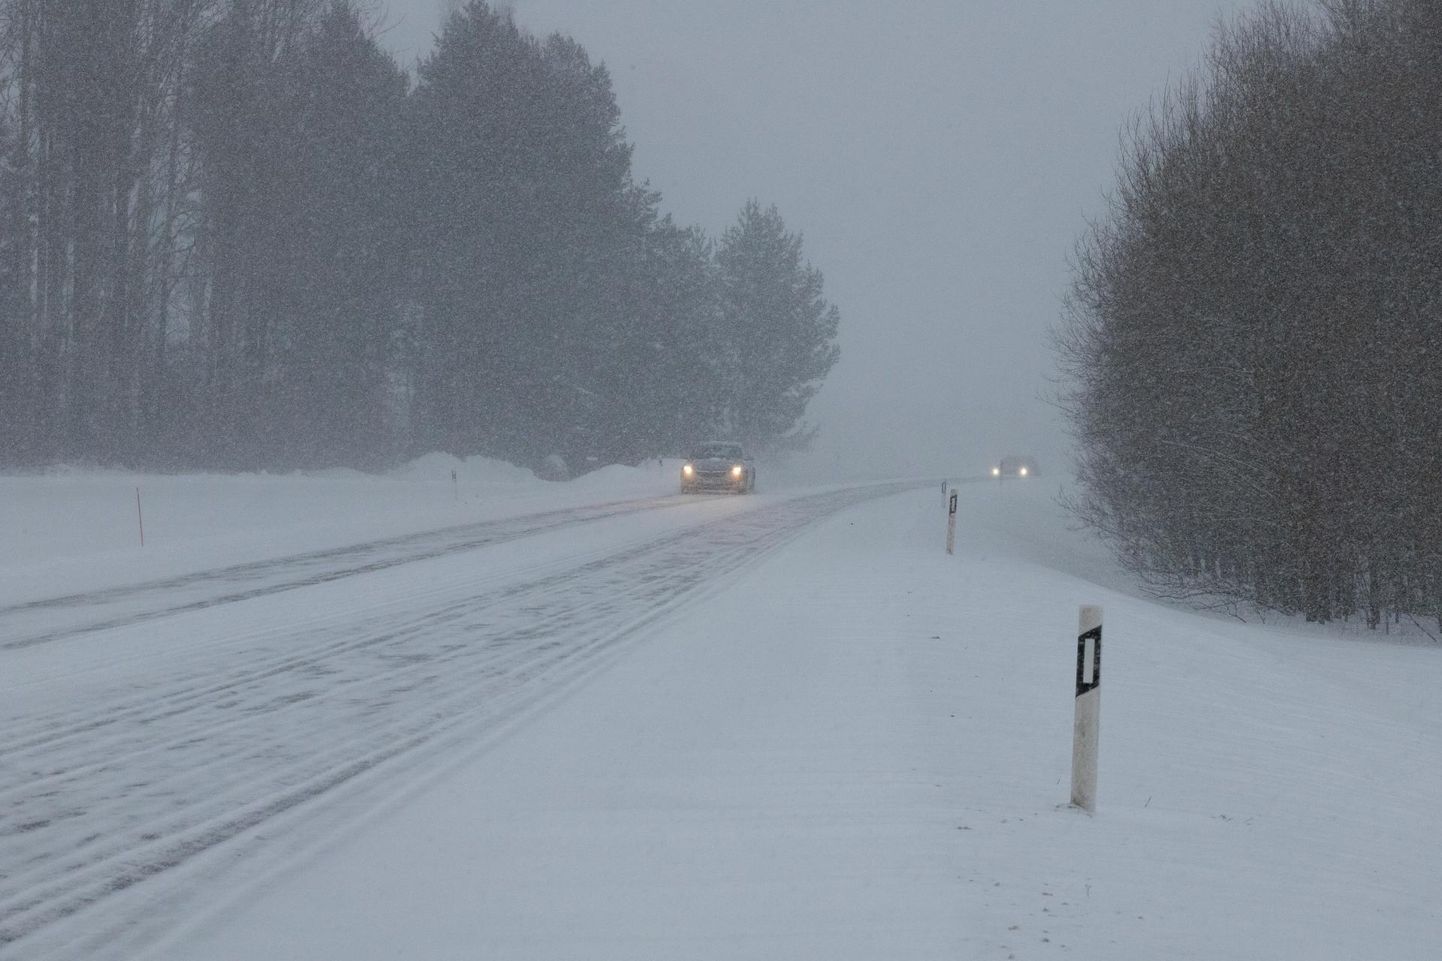 Keskkonnaagentuuri ilmaprognoosi järgi tuleb reedel kuni 26 kraadi külma. Lõuna-Eestis sajab ka lund.